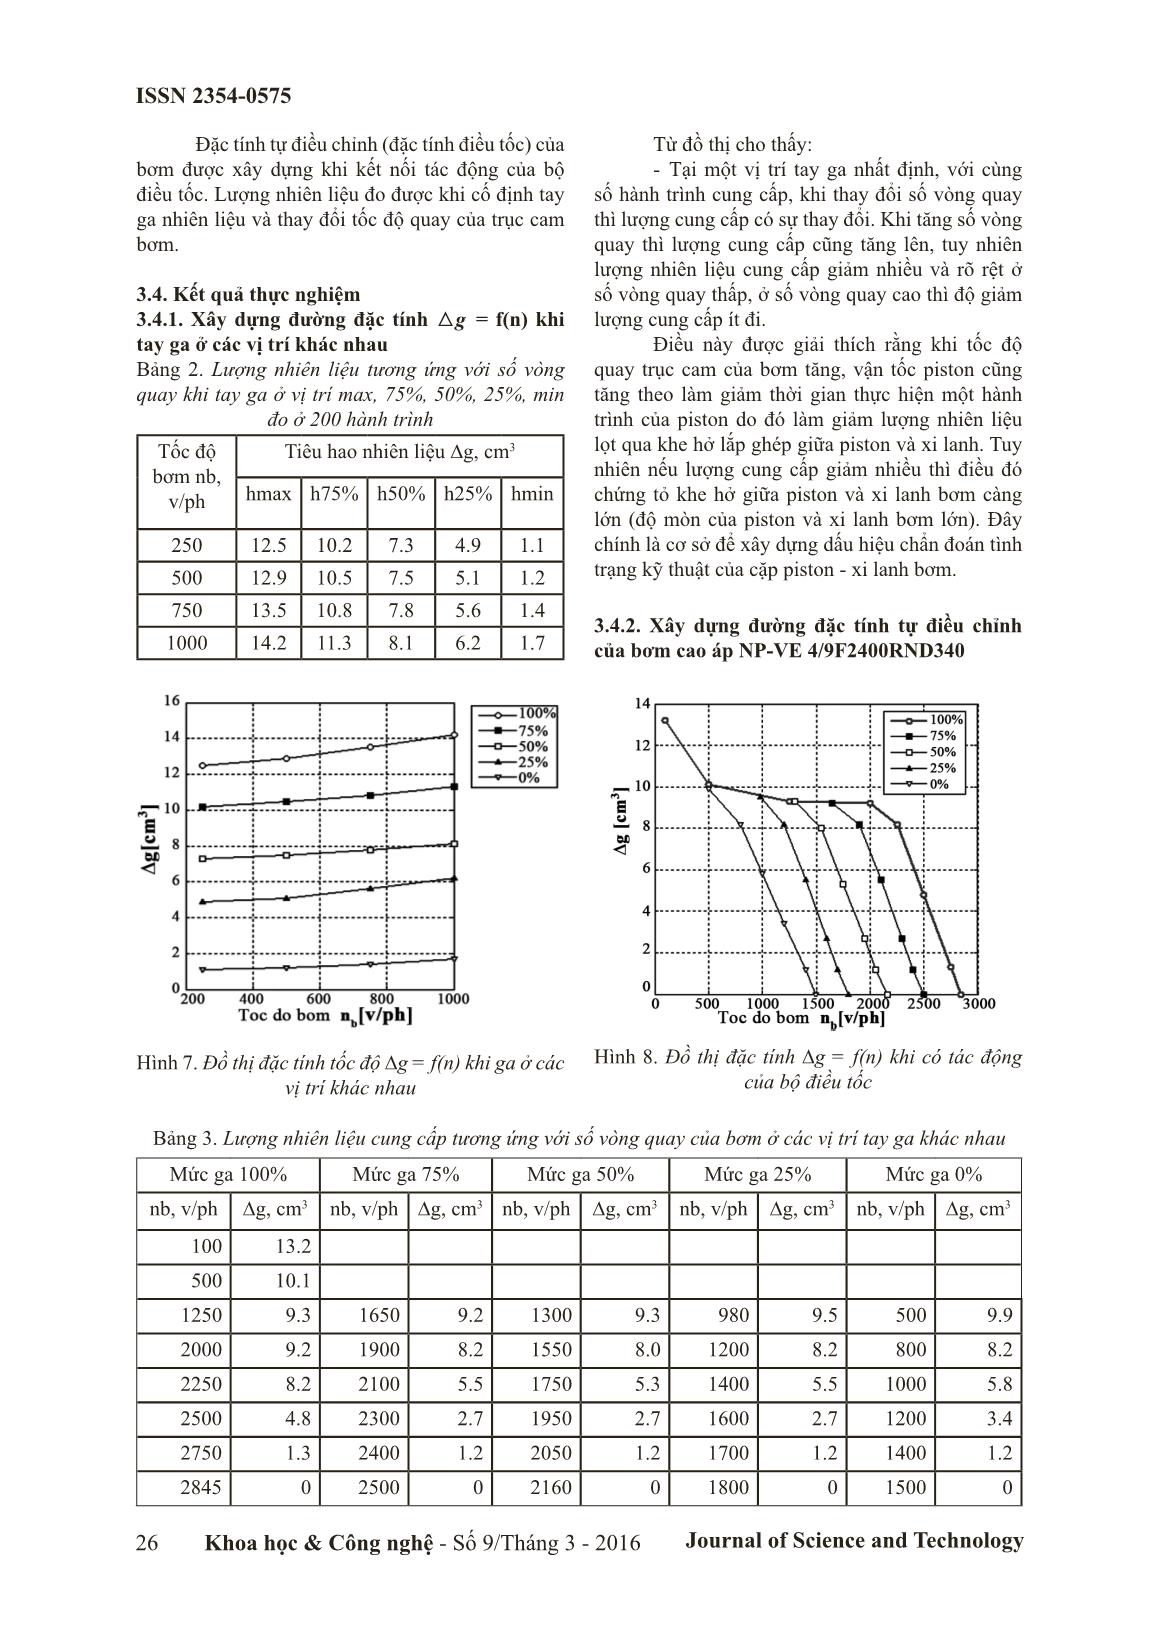 Khảo sát đường đặc tính của bơm cao áp NP-VE 4/9F2400RND340 sử dụng trên động cơ diesel trang 4